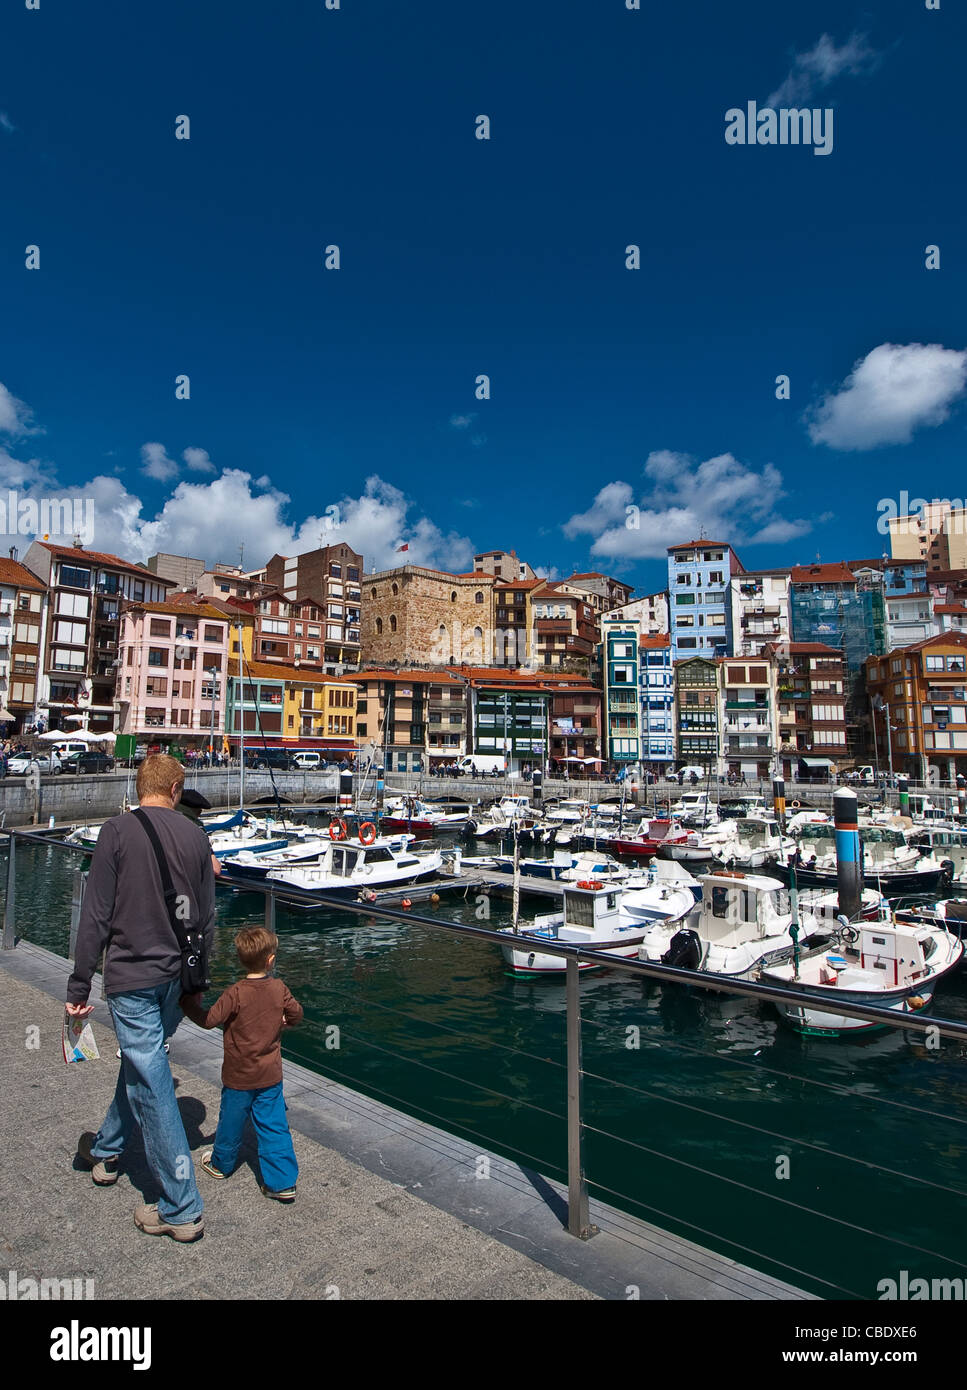 Port of Bermeo, Bizkaia, Bizcaye, Basque Country, Spain/ Puerto y ayuntamiento de Bermeo, Bizkaia, Euskadi. Stock Photo